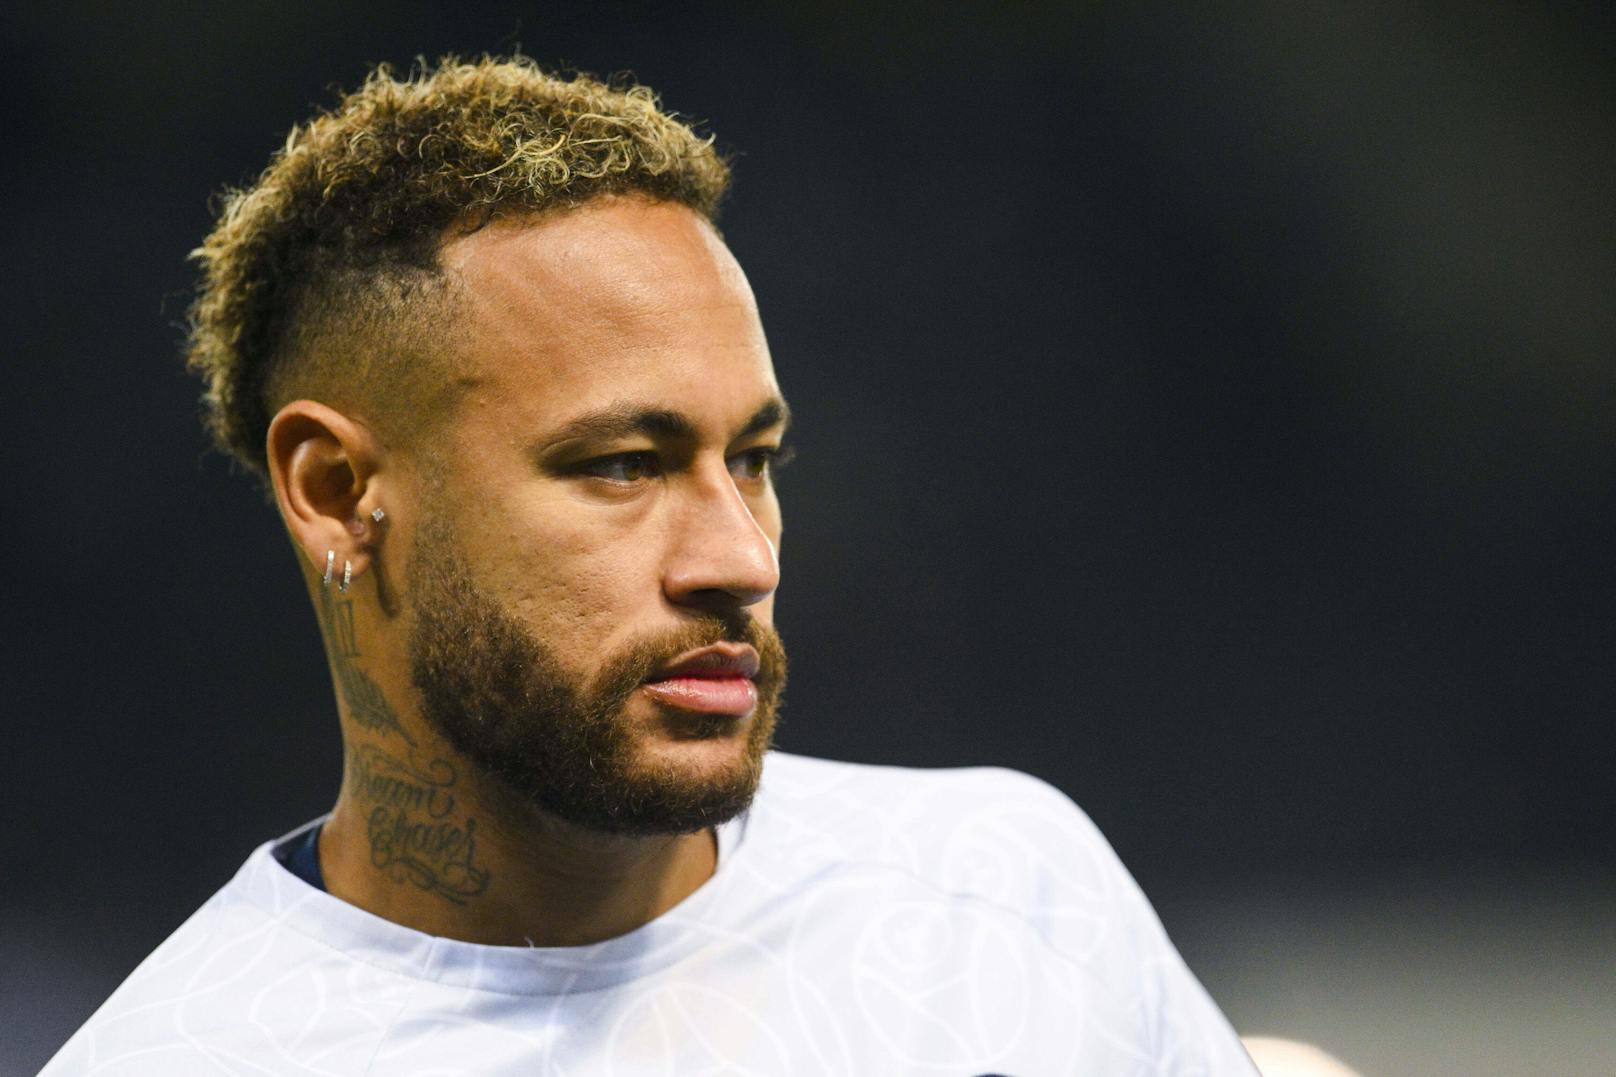 Schwere Vorwürfe! Superstar Neymar droht Haftstrafe